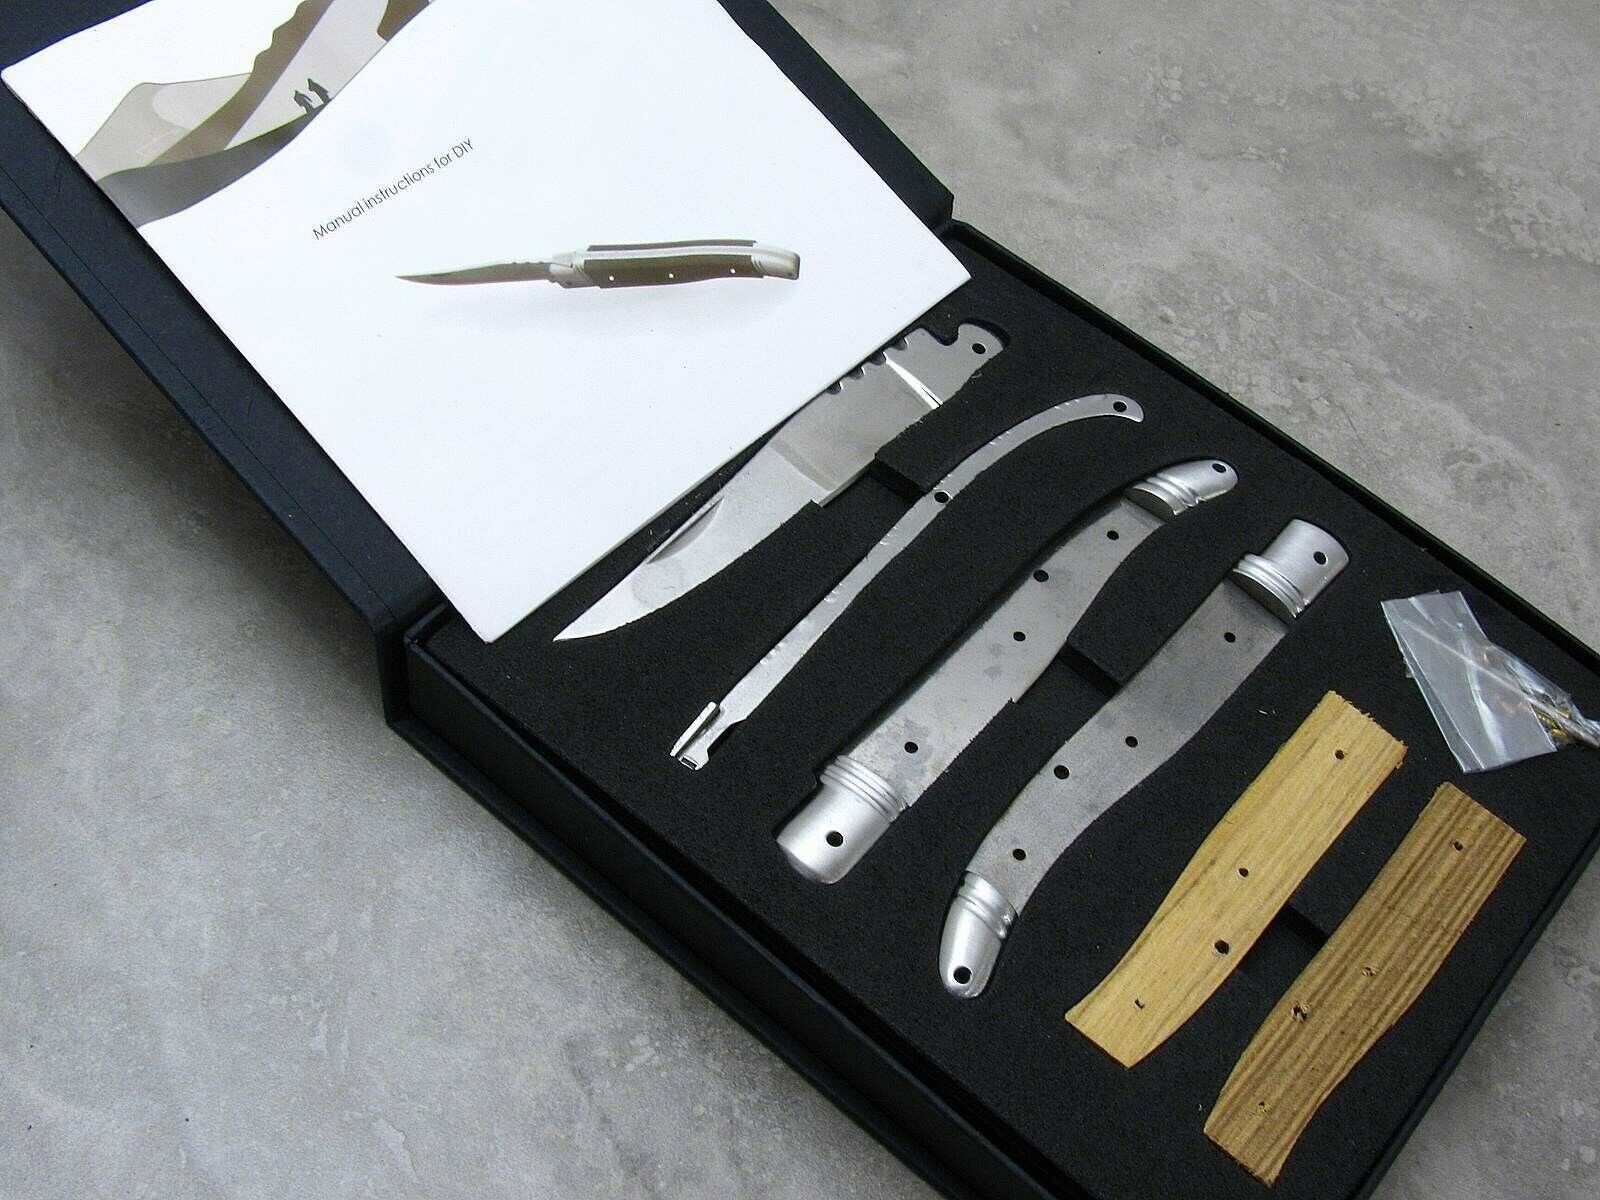 Folding Blade Knife Making Kit for the DIY Knife Maker